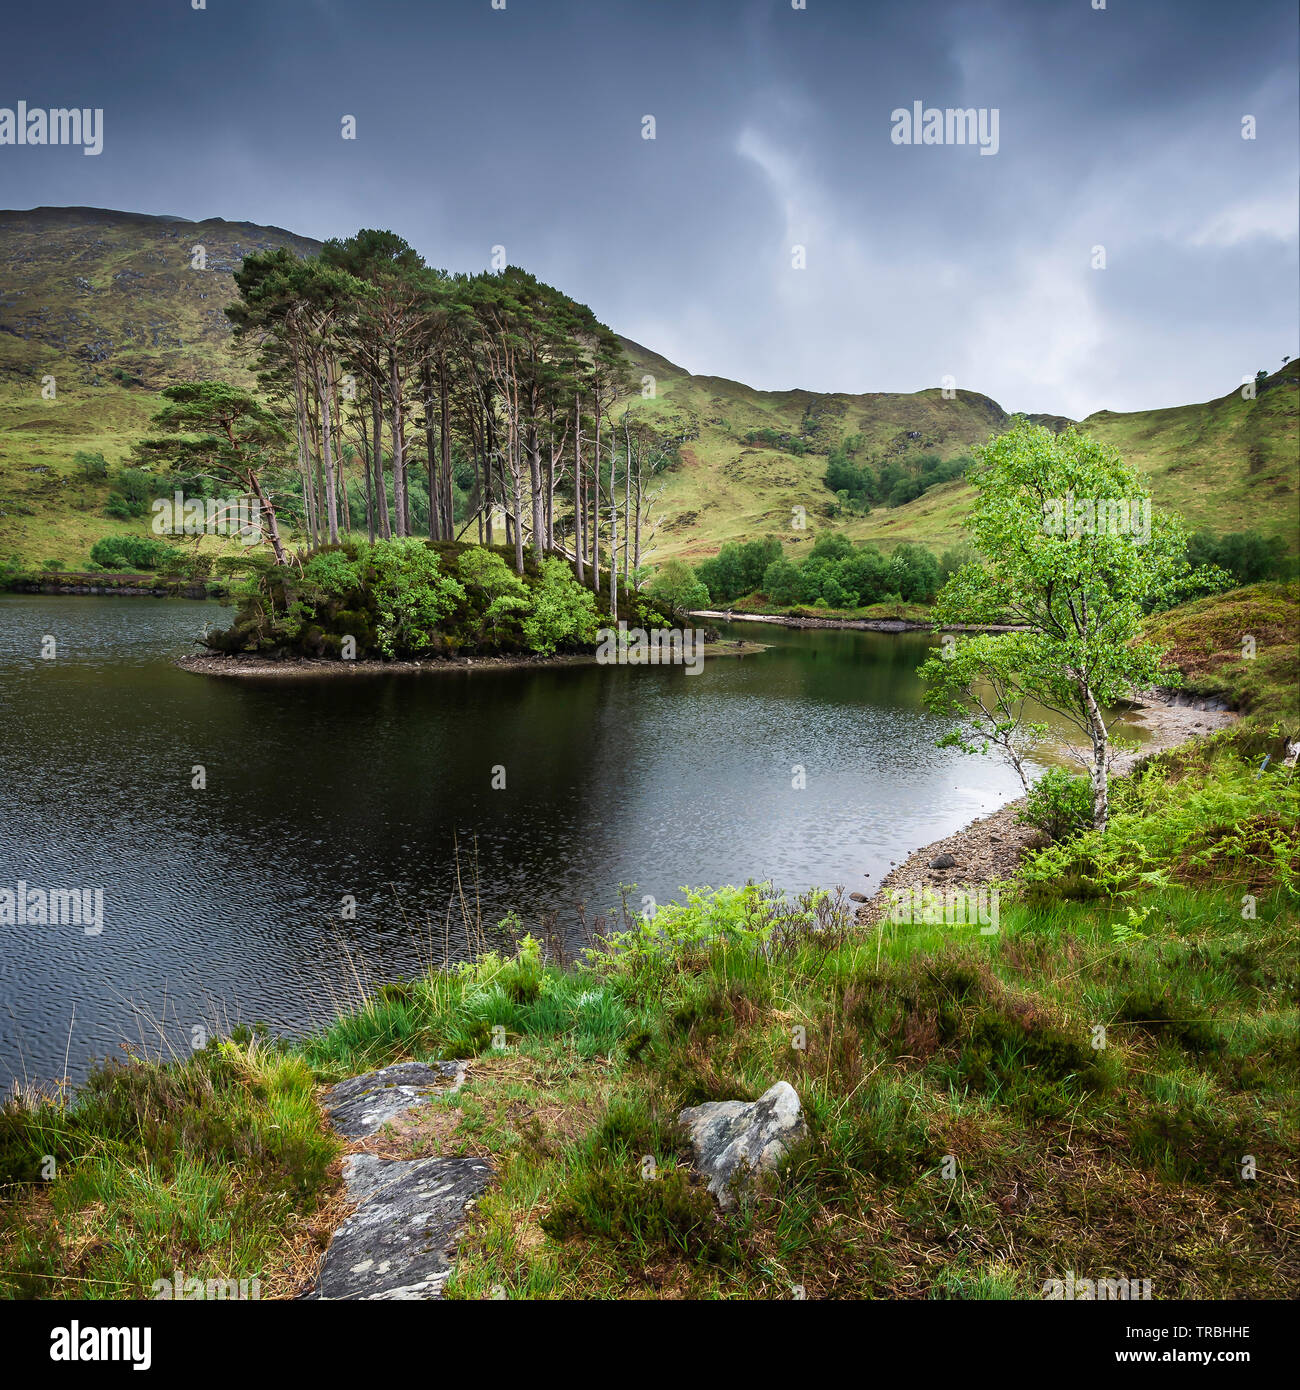 El paisaje de Escocia,UK.Pinos crece sobre una pequeña isla en medio del lago, Moody cielo de verdes colinas y rocas en Lakeshore.Naturaleza UK. Foto de stock